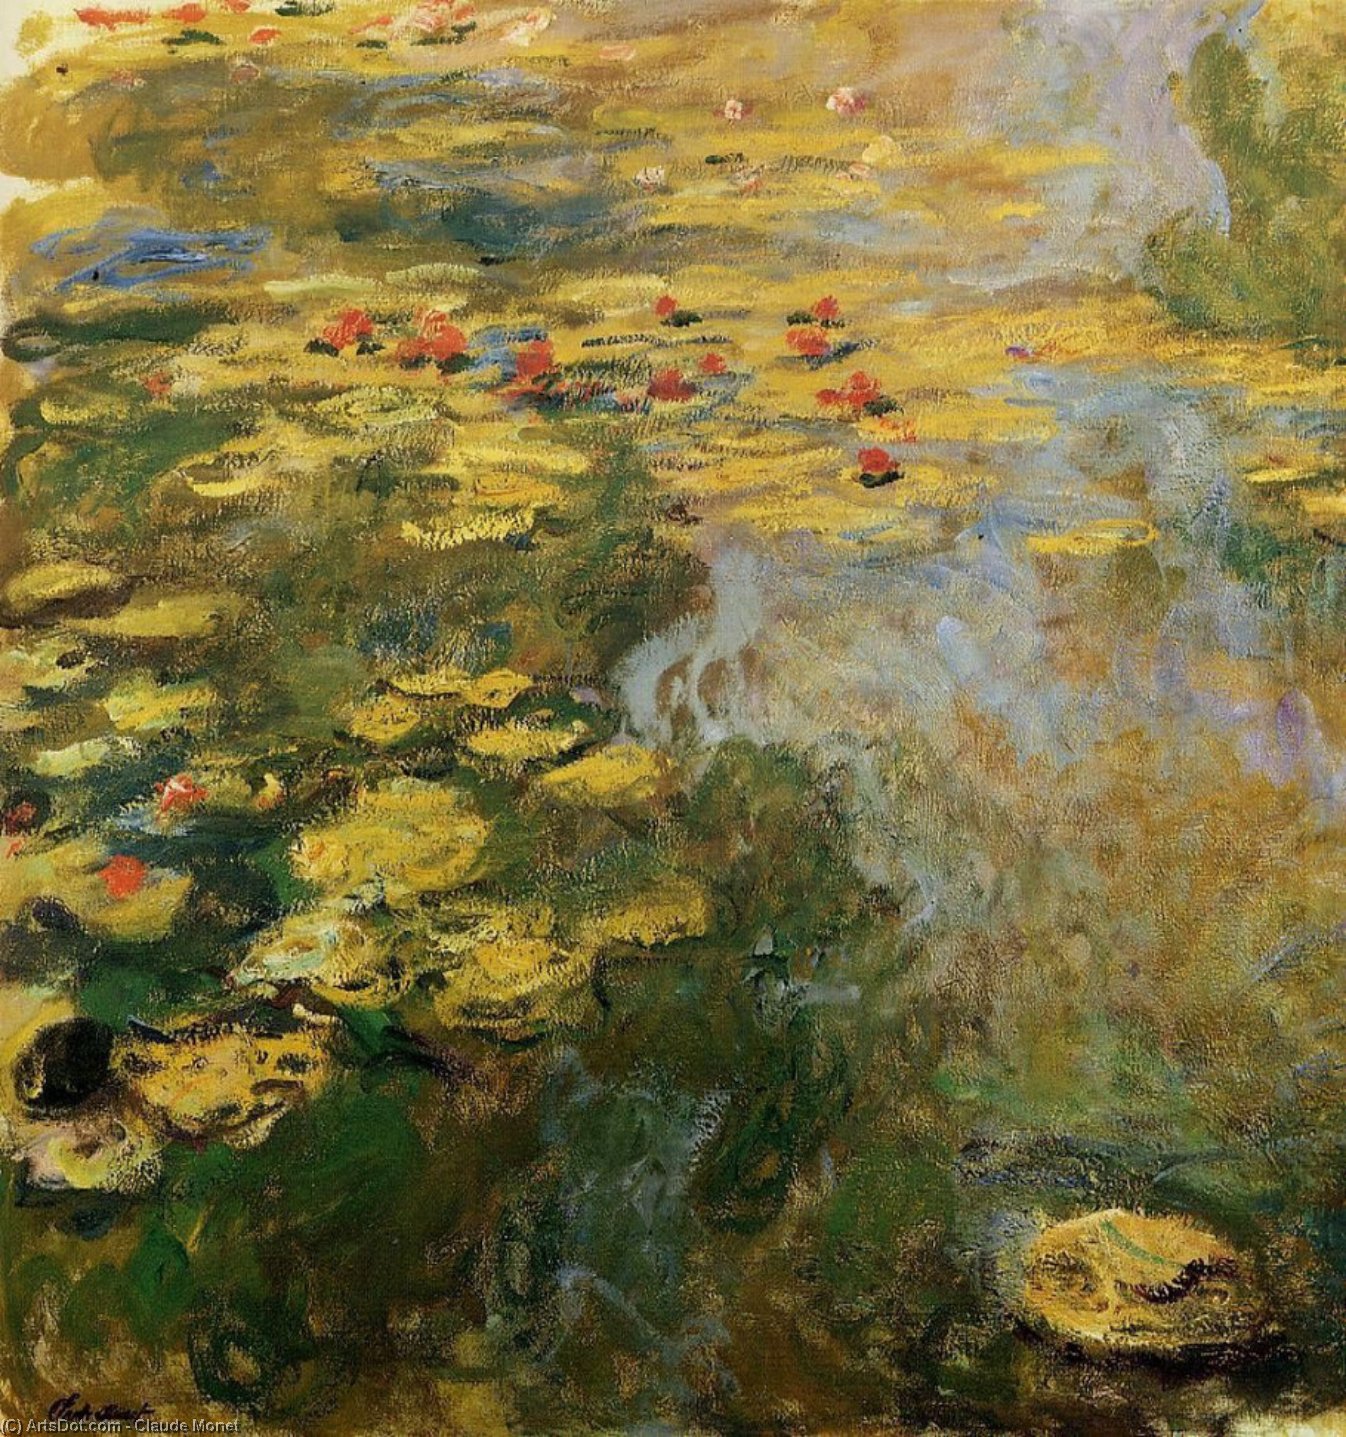 Купить Репродукции Произведений Искусства The Water-Lily Pond (слева), 1917 по Claude Monet (1840-1926, France) | ArtsDot.com